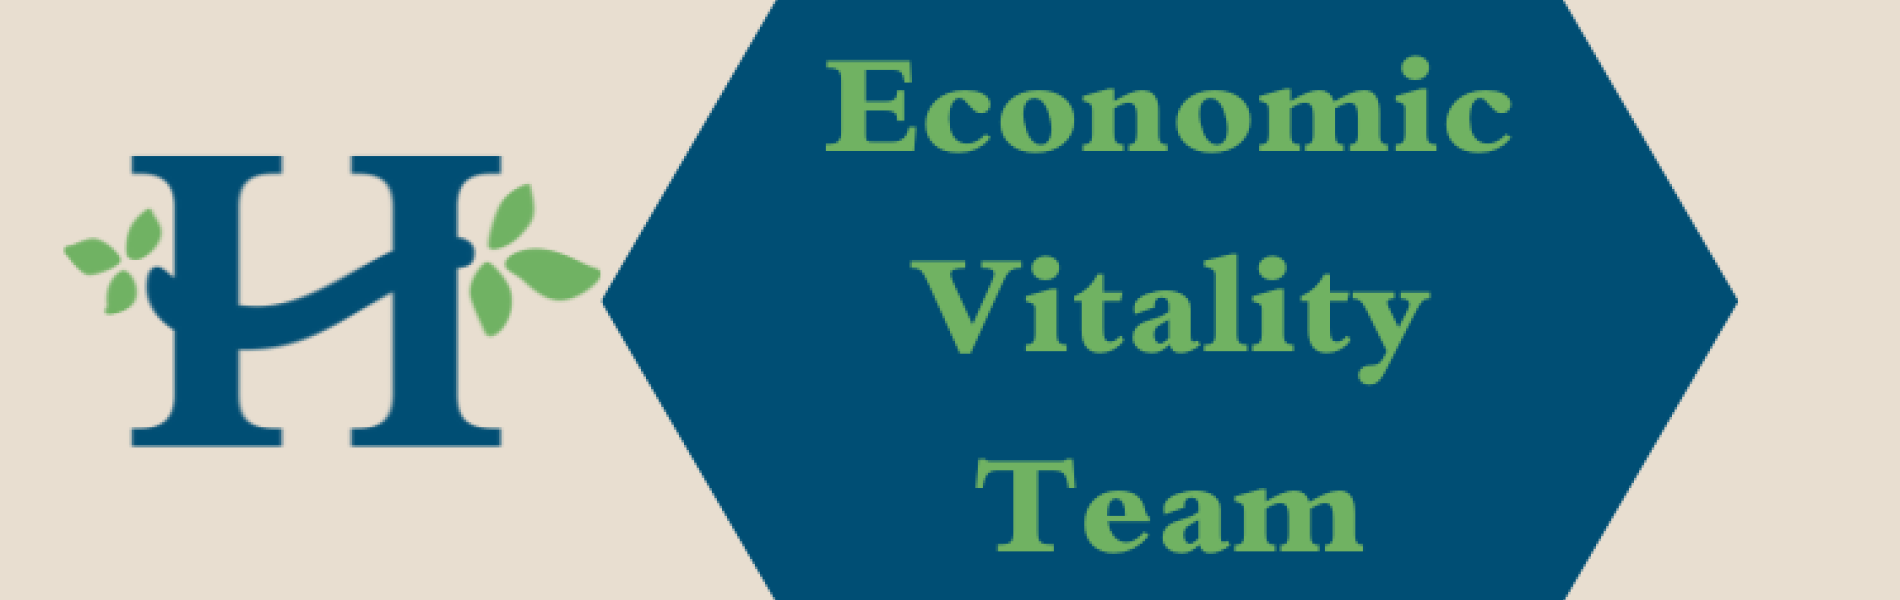 economic vitality team meeting graphic